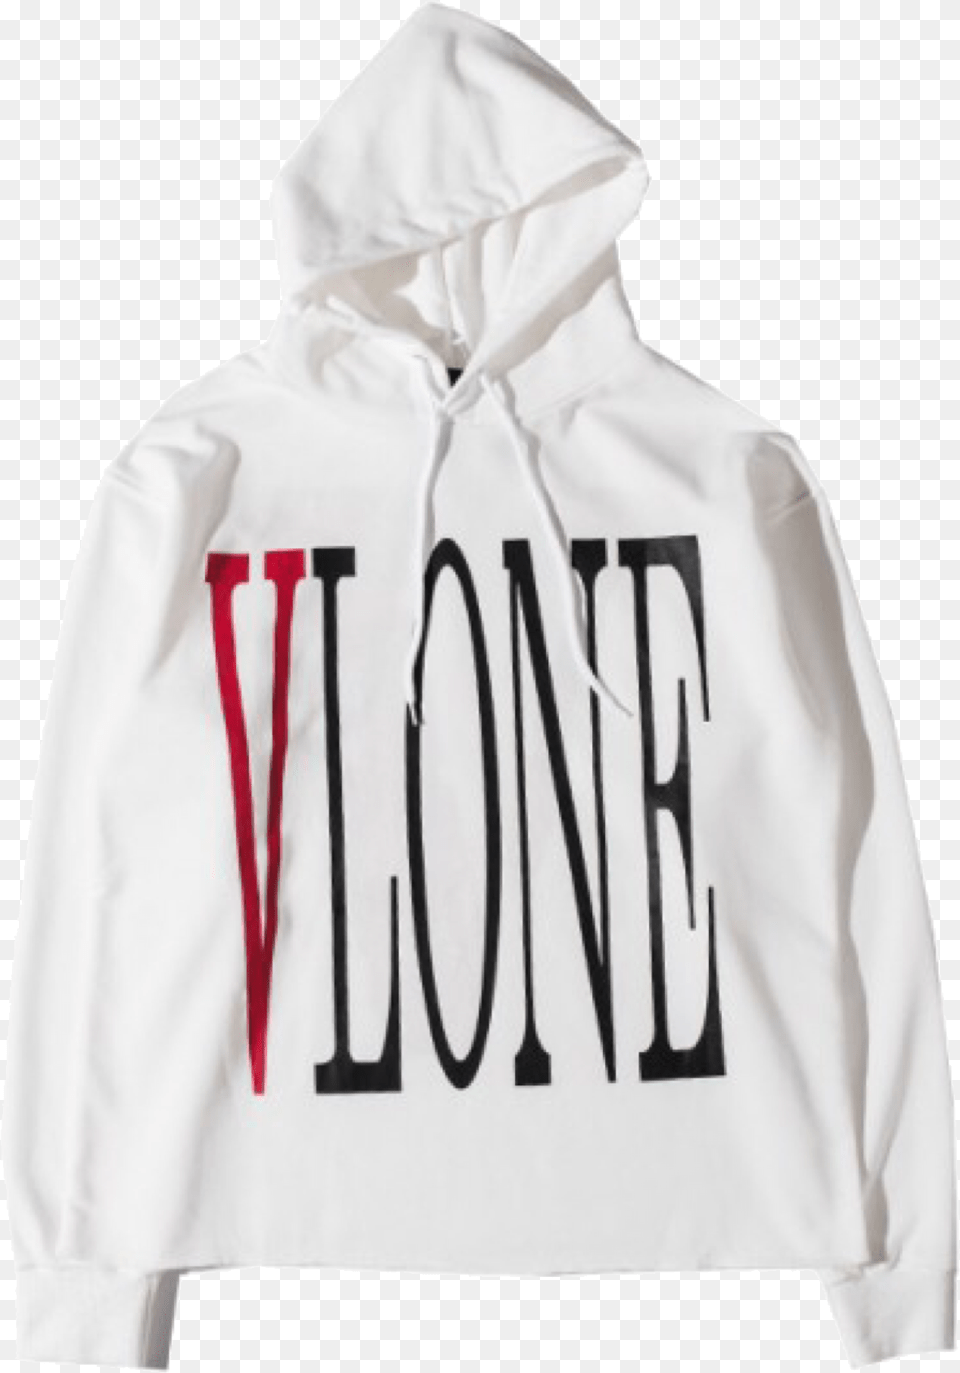 Vlone Logo Vlone White Hoodie, Clothing, Hood, Knitwear, Sweater Png Image